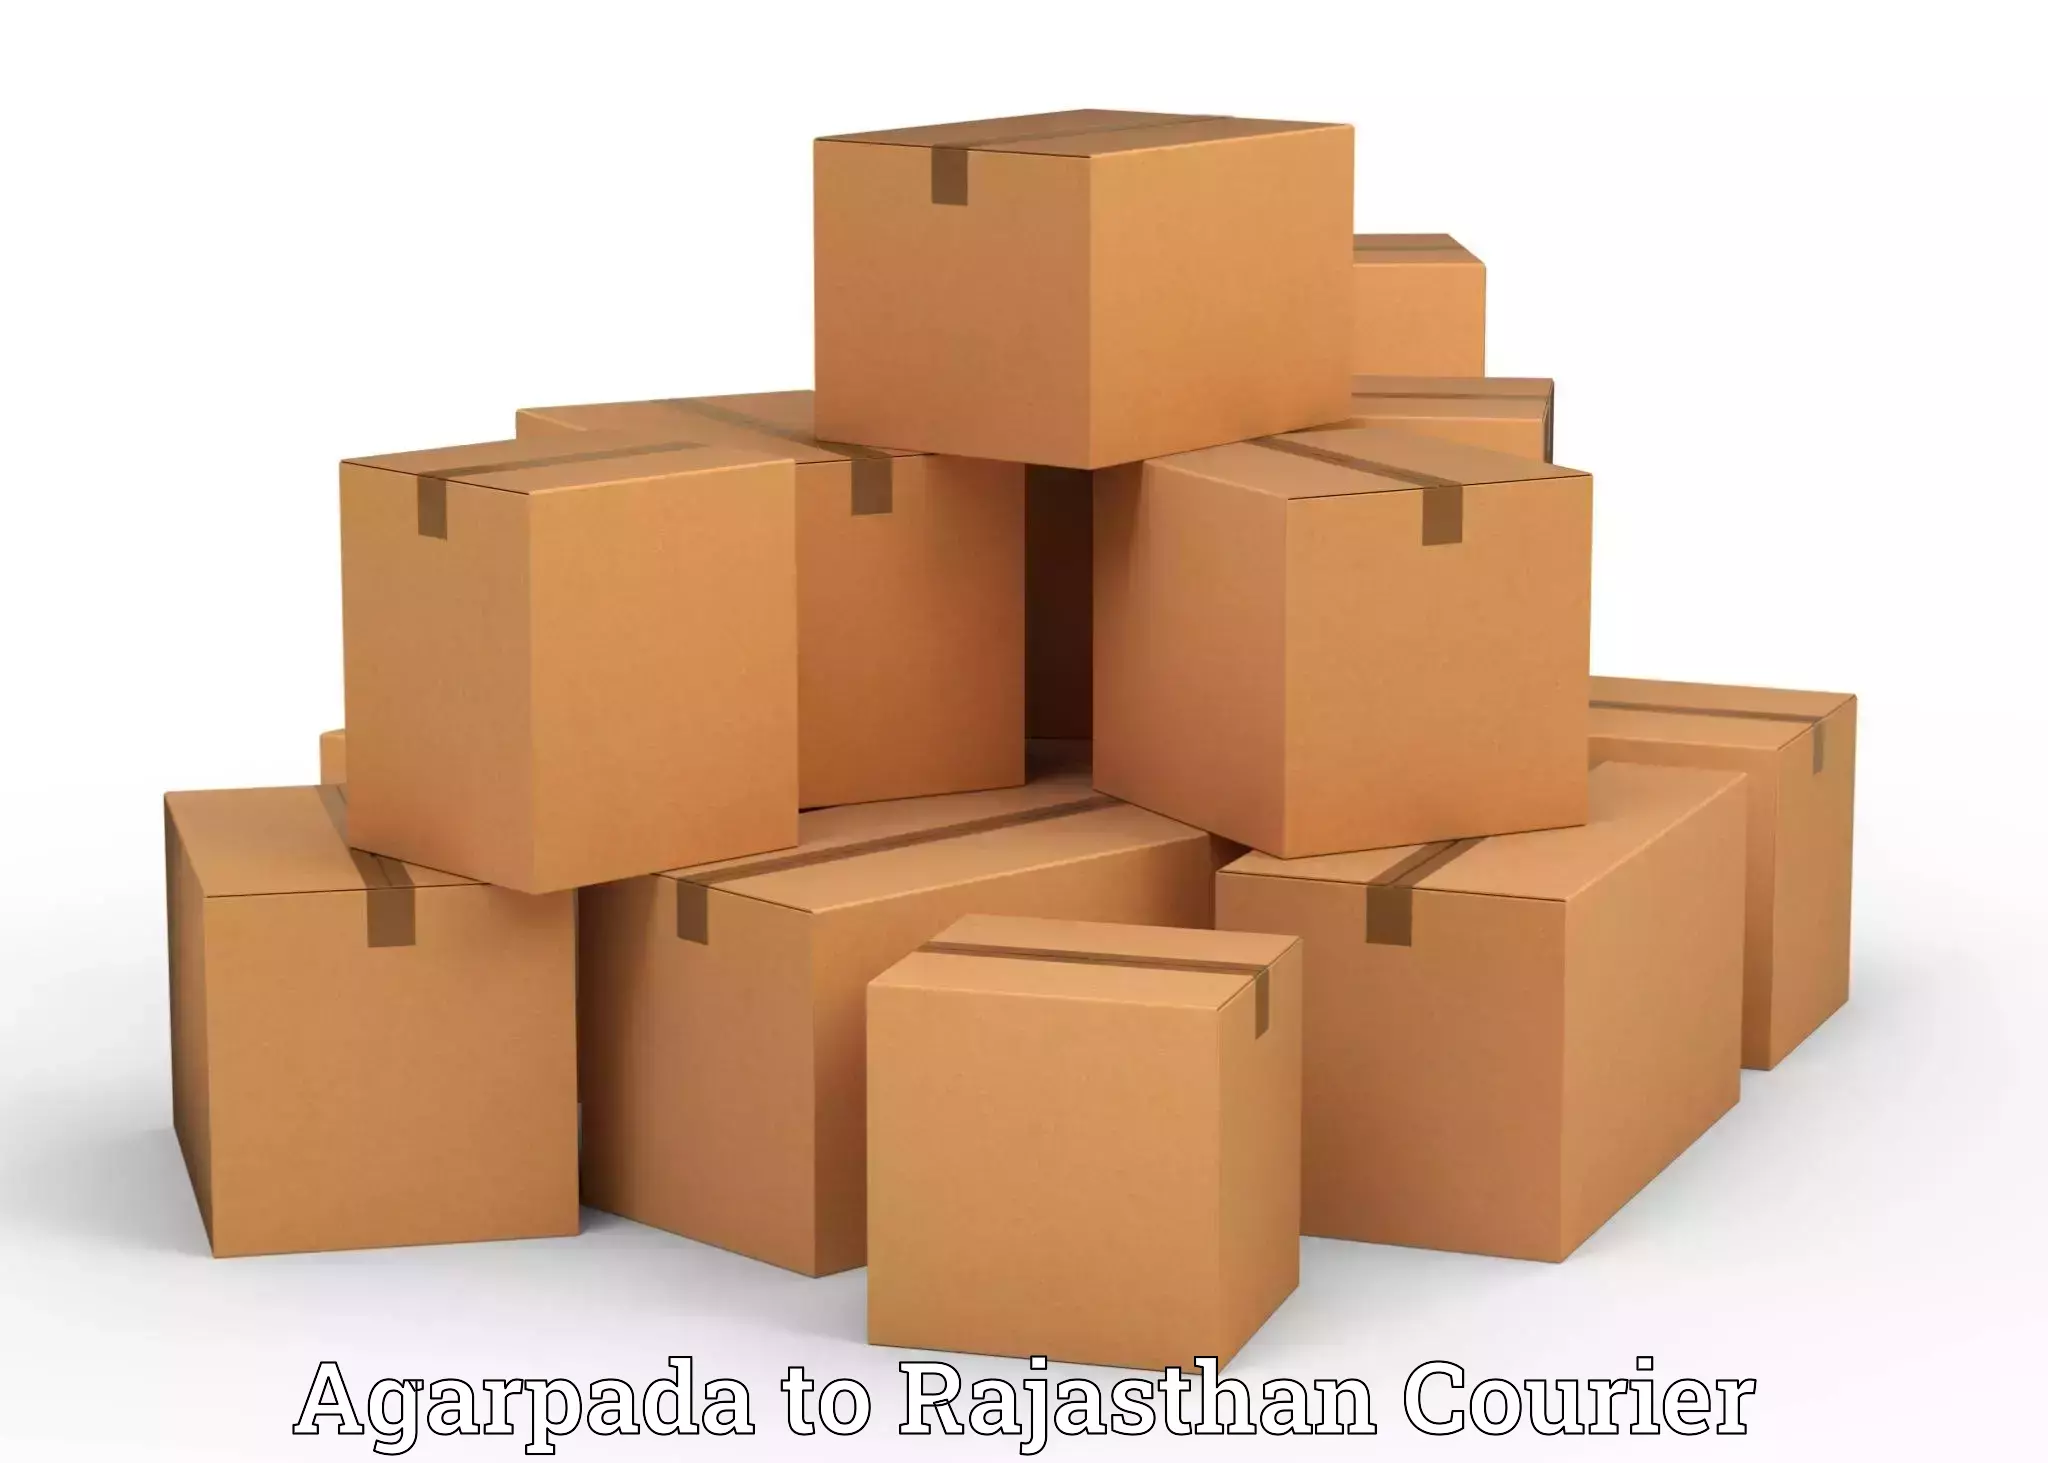 Professional movers and packers Agarpada to Nainwa